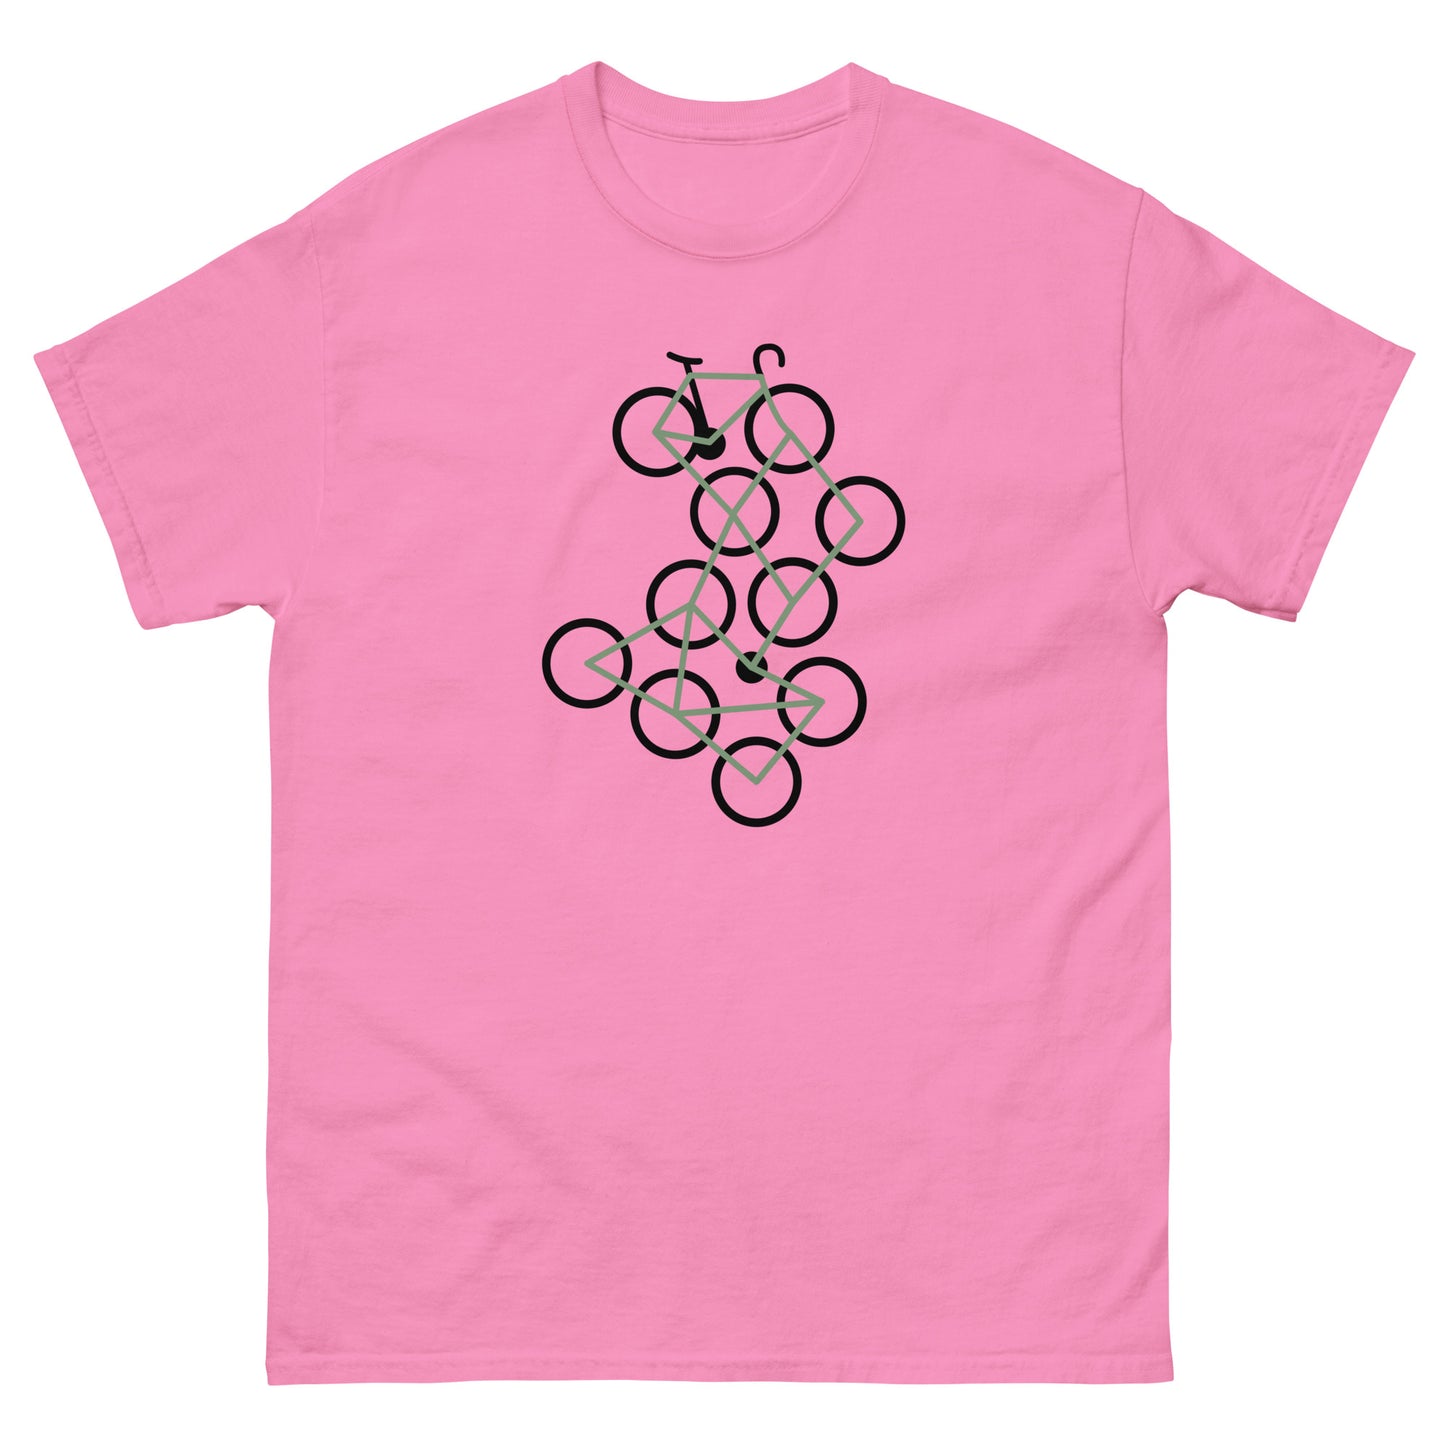 Bike Art Bike Men's Cycling Classic t shirt